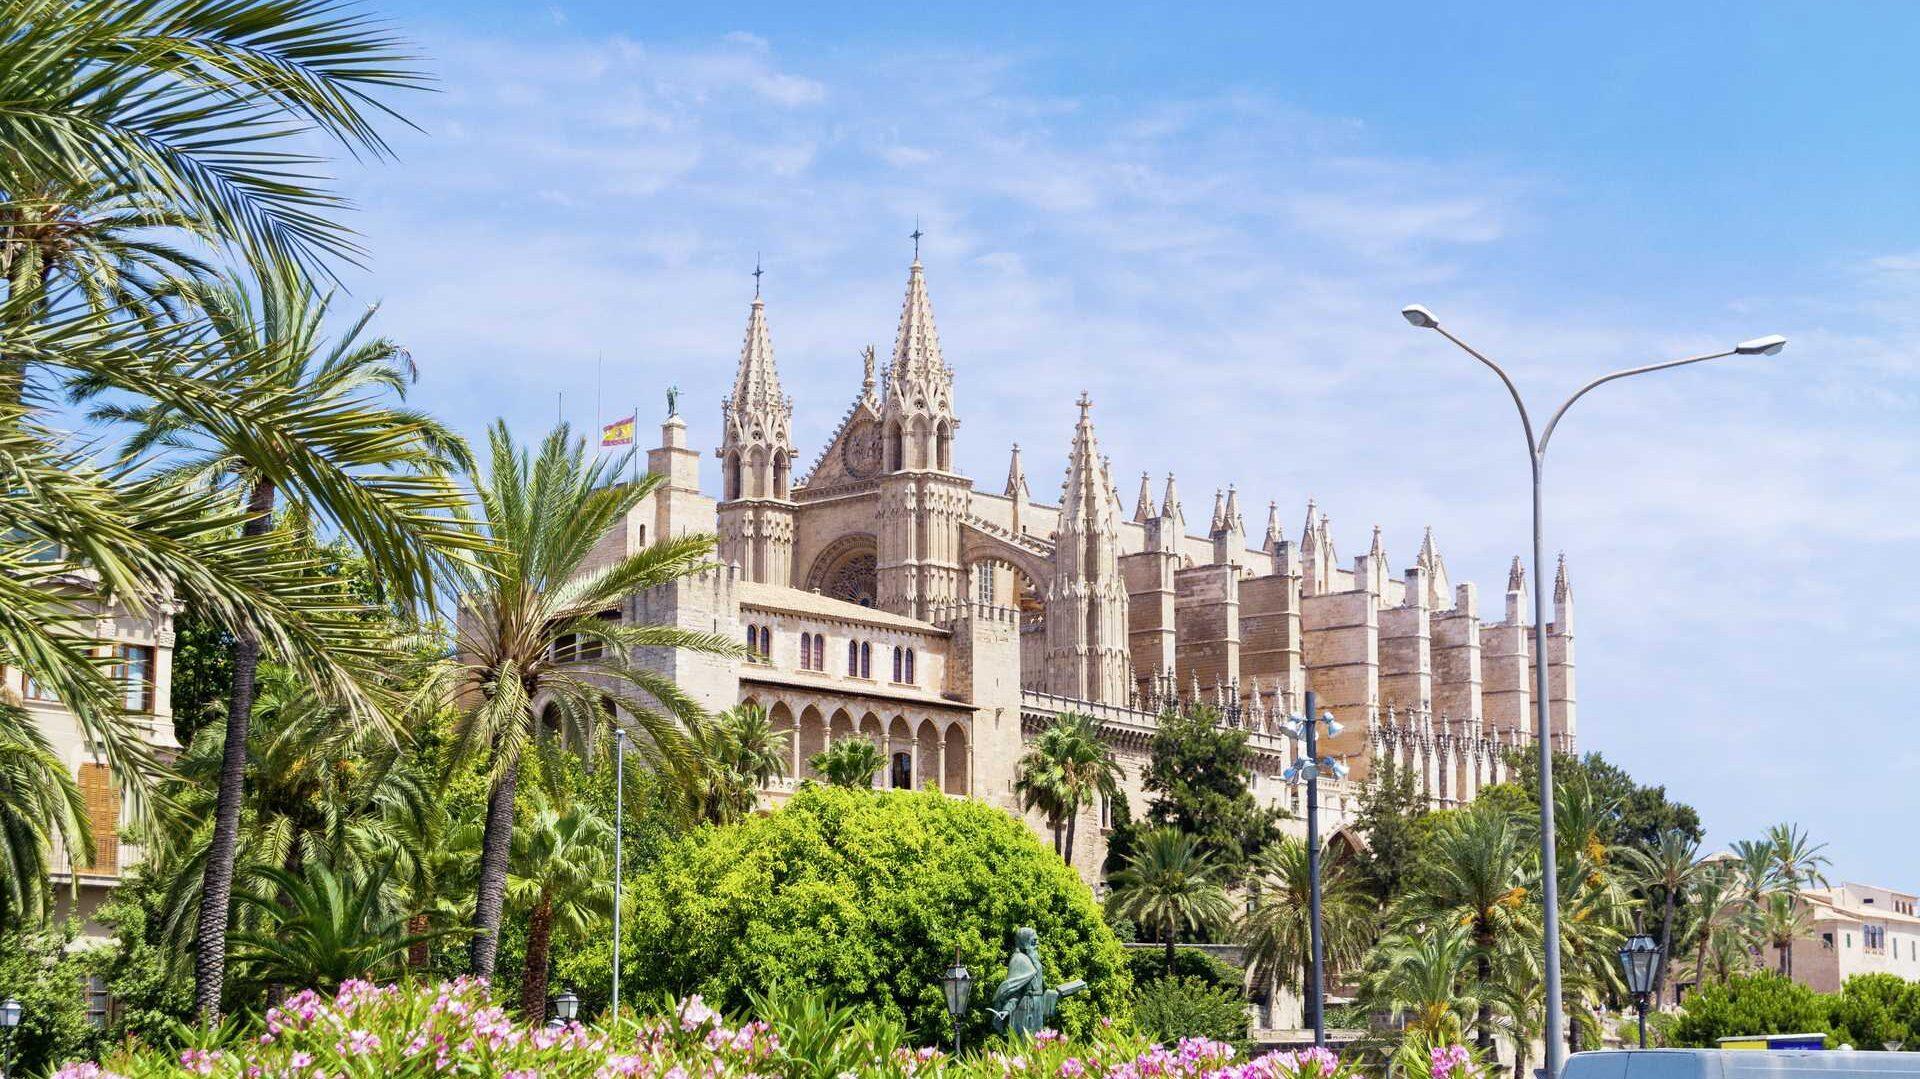 På bilde ser vi den vakre kirken Palma Katedralen. Kirken ligger i hjerte av Palme på Mallorca.